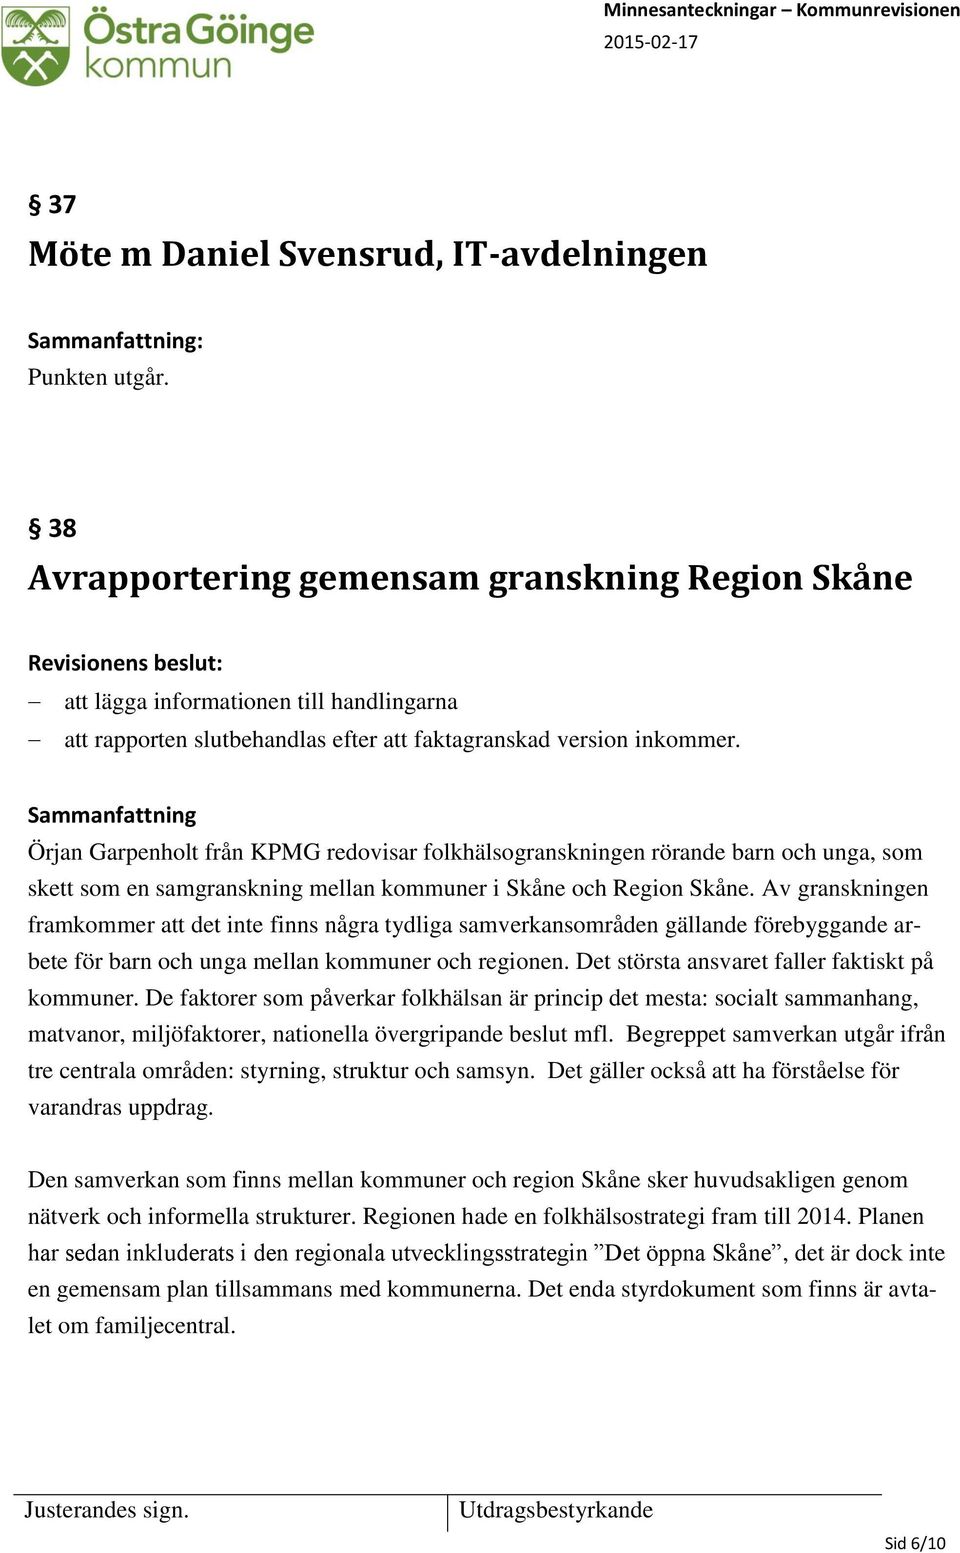 Örjan Garpenholt från KPMG redovisar folkhälsogranskningen rörande barn och unga, som skett som en samgranskning mellan kommuner i Skåne och Region Skåne.